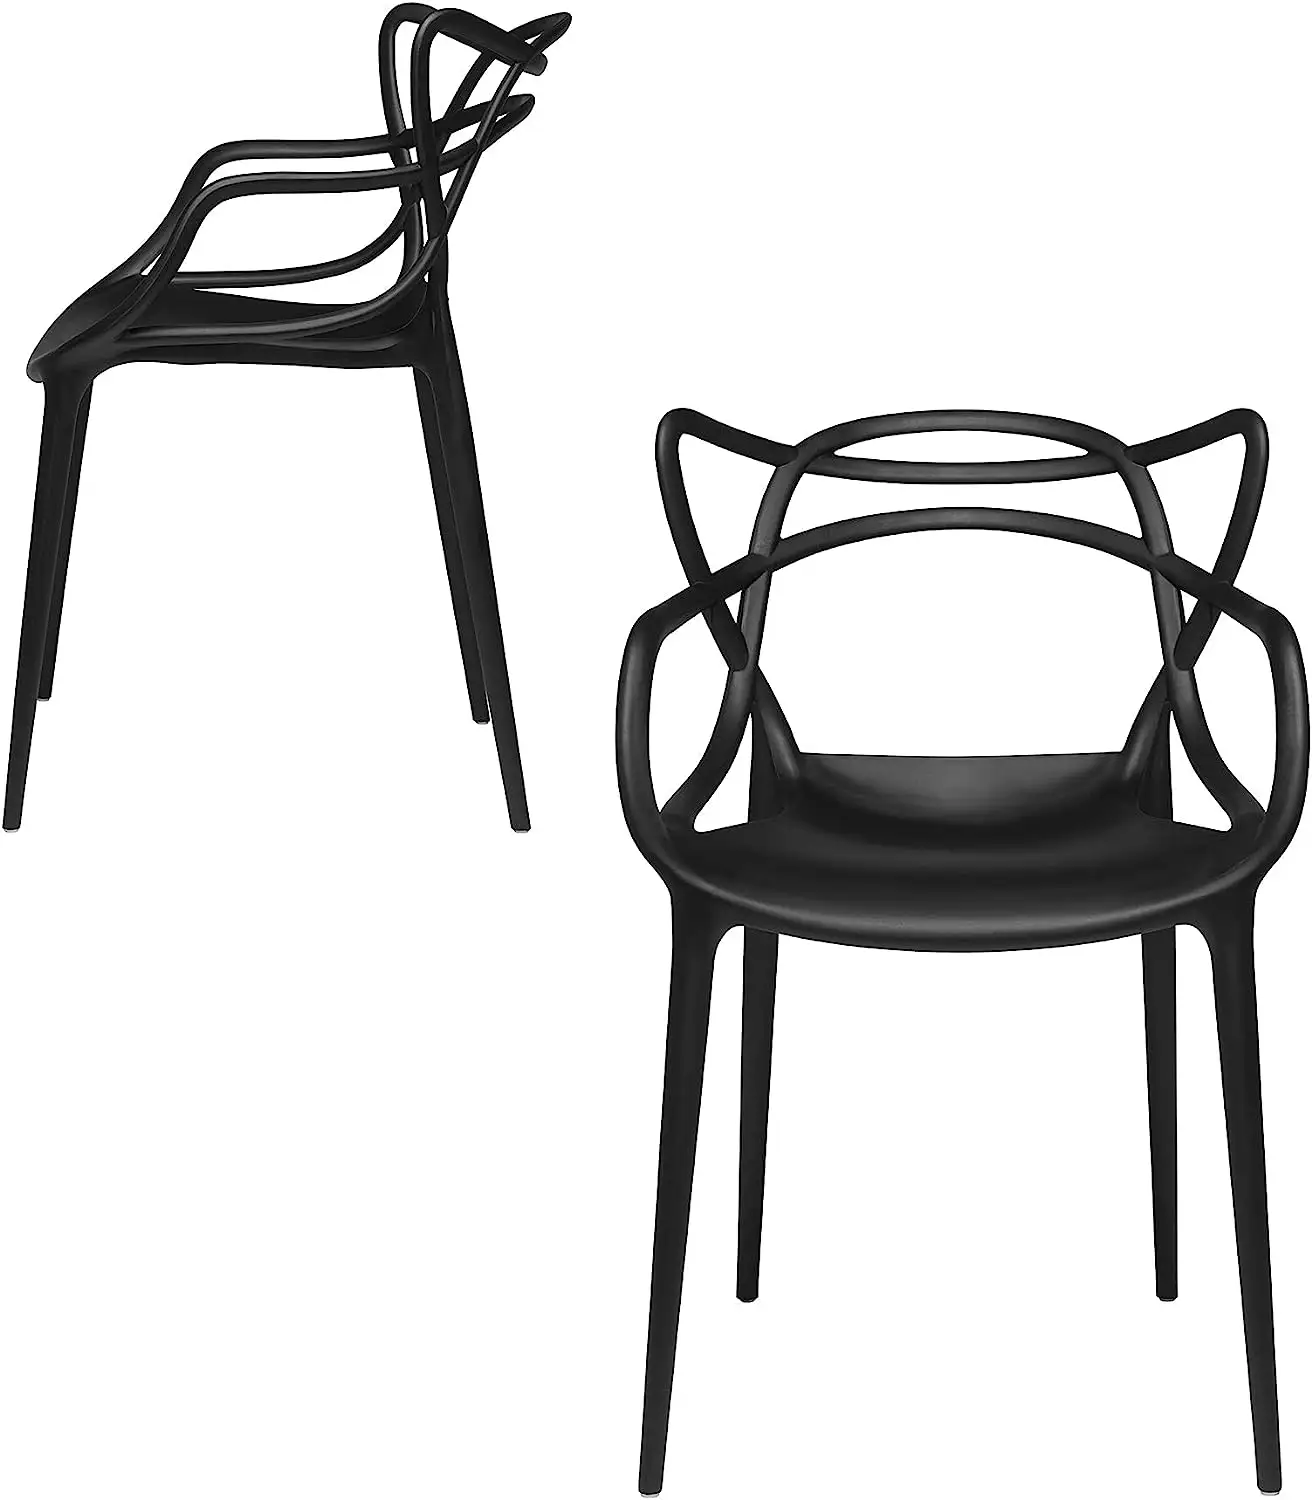 Milan Modern Masters Verwickelter Stuhl Esszimmers tuhl mit roter Kreuz lehne Lässiger Stuhl für Restaurants, Cafés, Küchen, Esszimmer